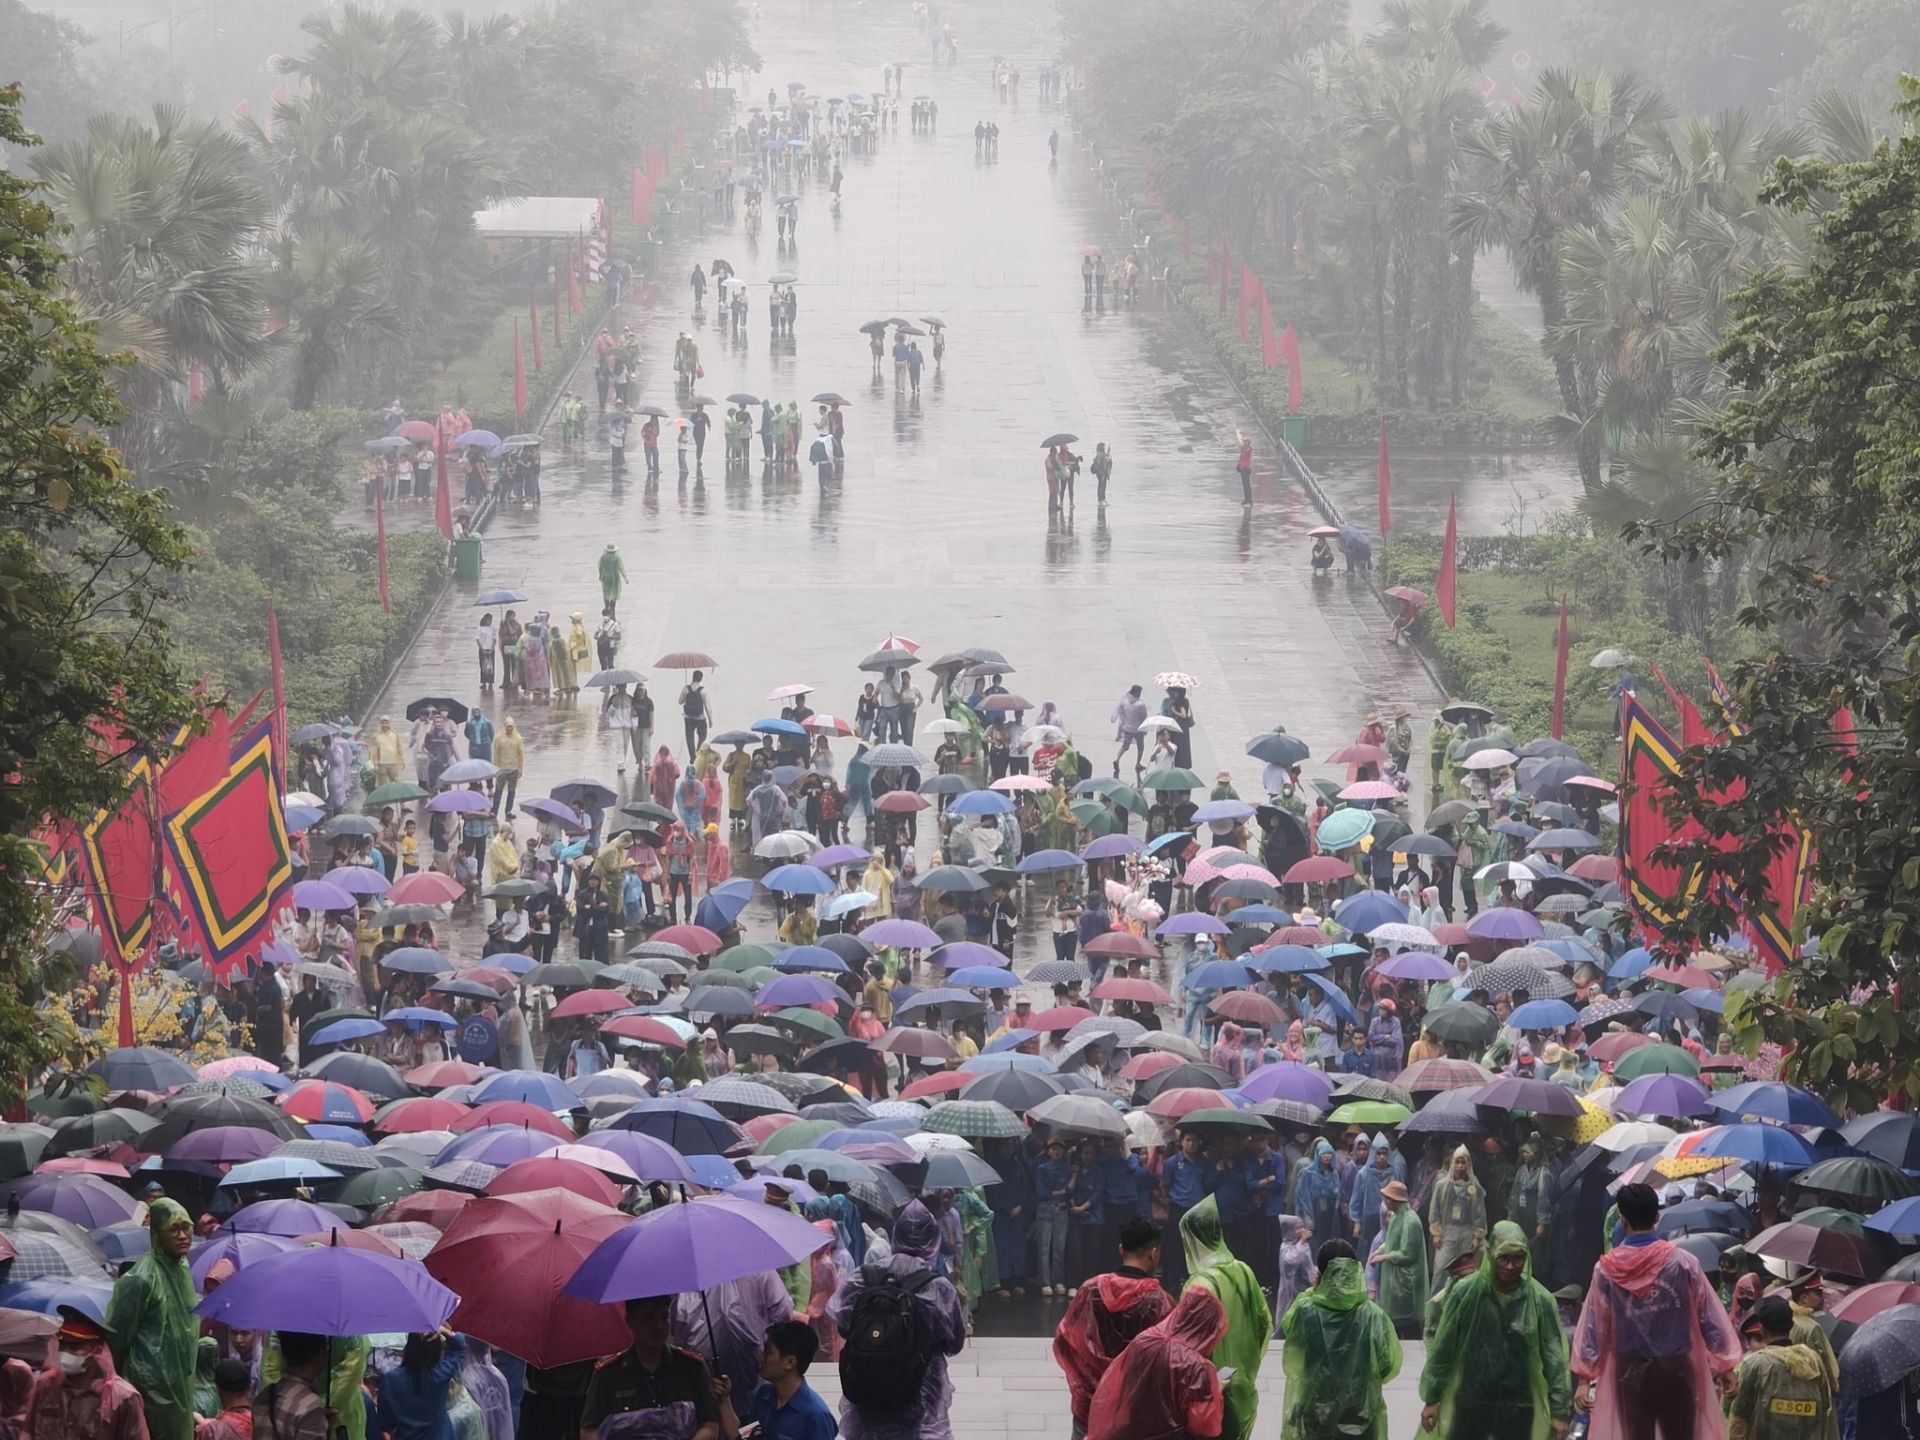 Thời tiết không làm ảnh hưởng nhiều đến lượng du khách về dâng hương tại Đền Hùng.